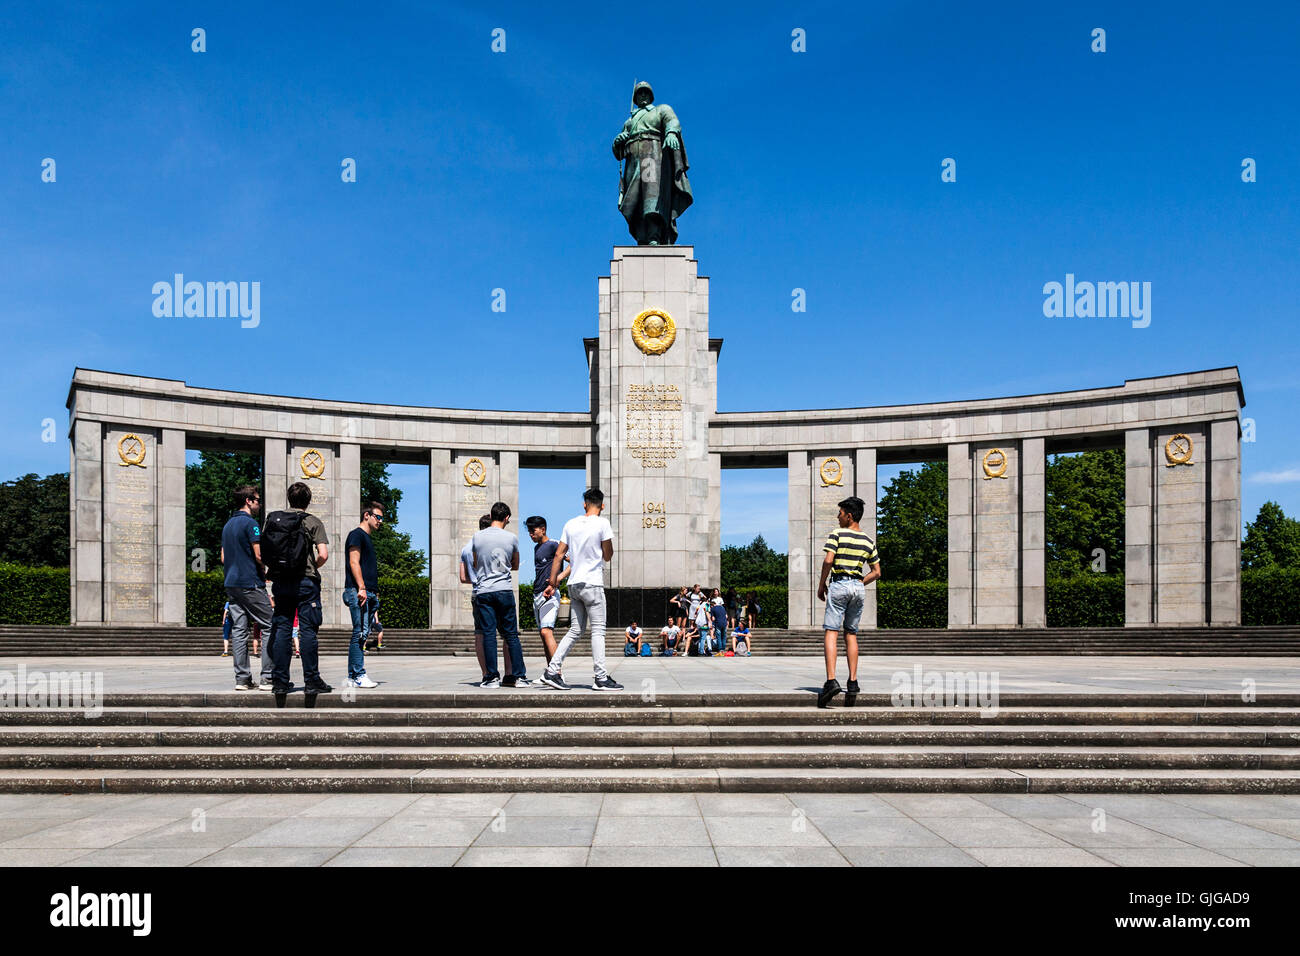 Soviet War Memorial, Tiergarten park, Berlin, Germany. Stock Photo